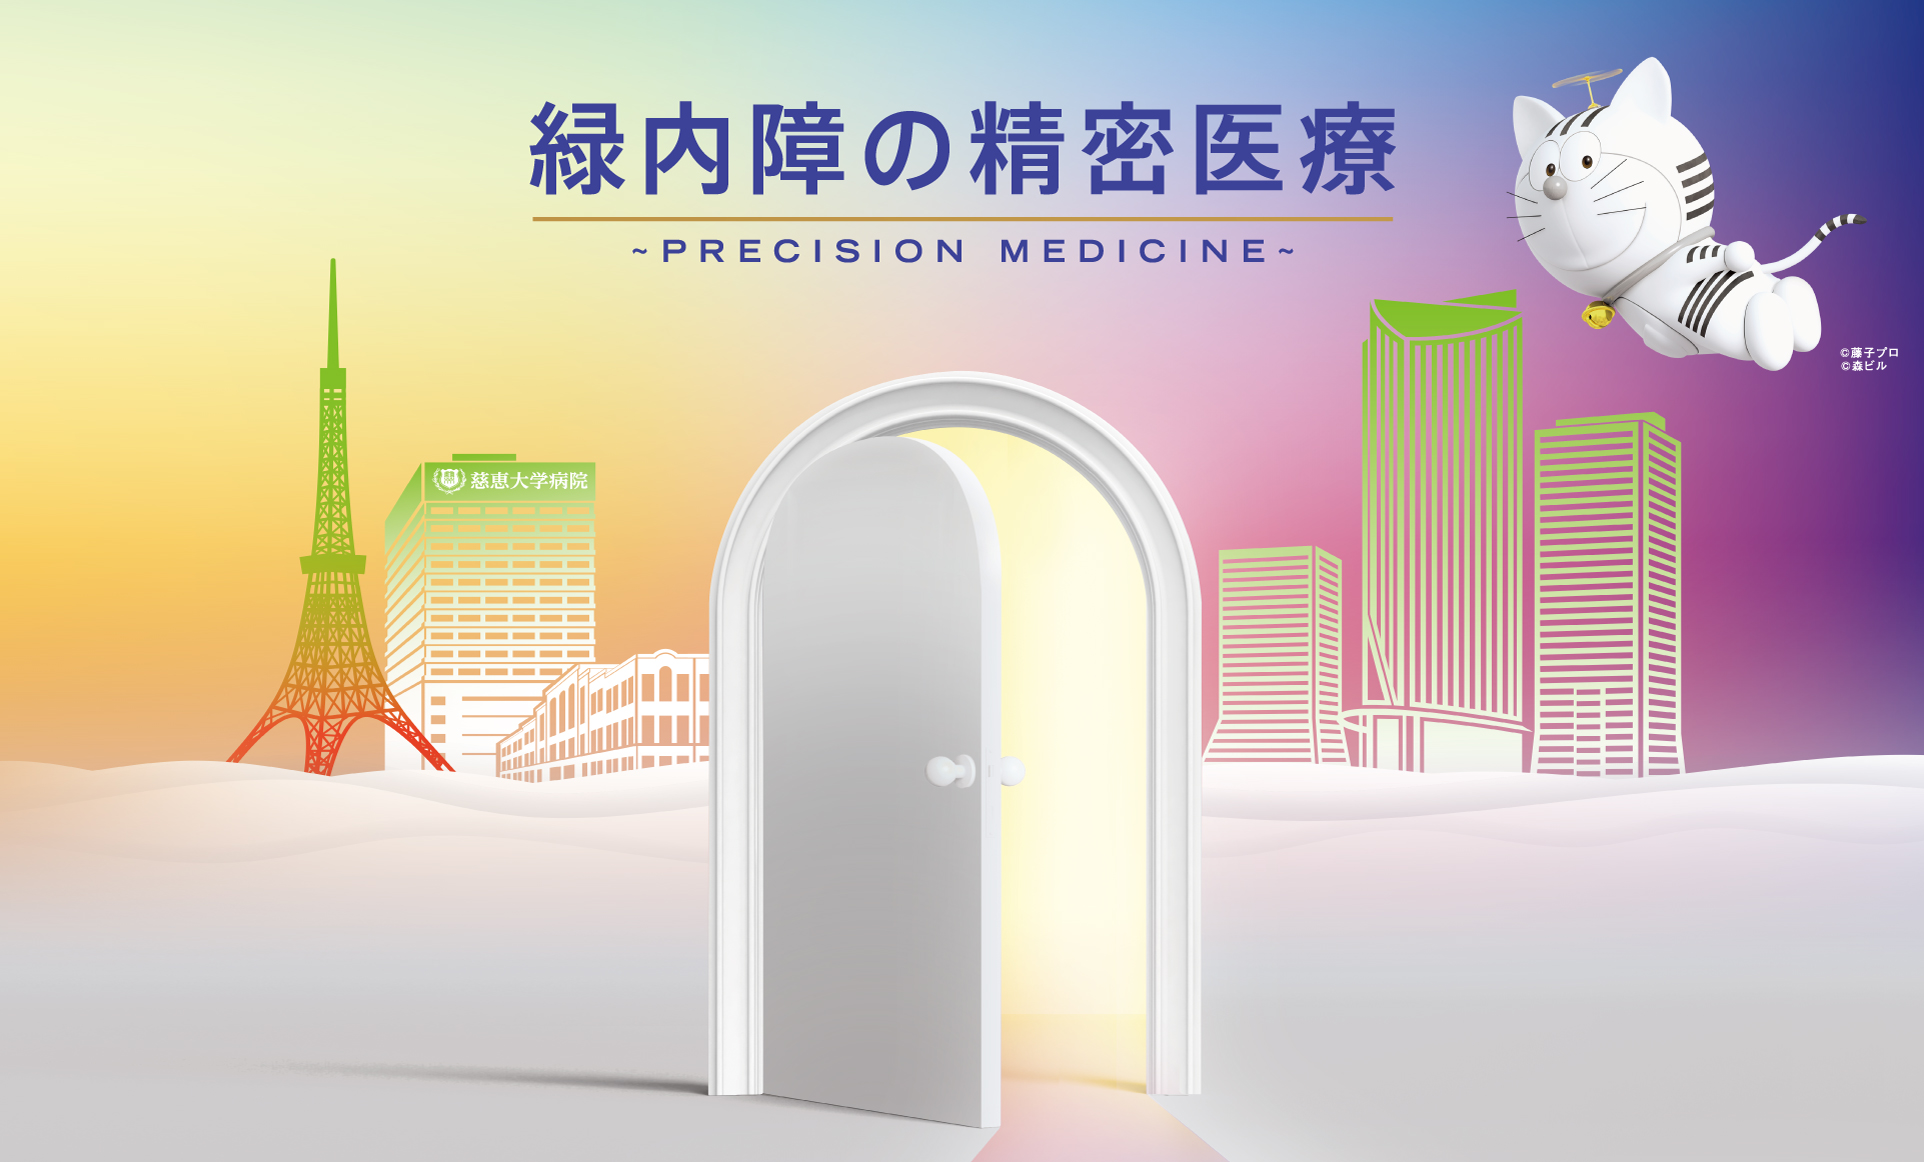 第34回日本緑内障学会「緑内障の精密医療~PRECISION MEDICINE~」